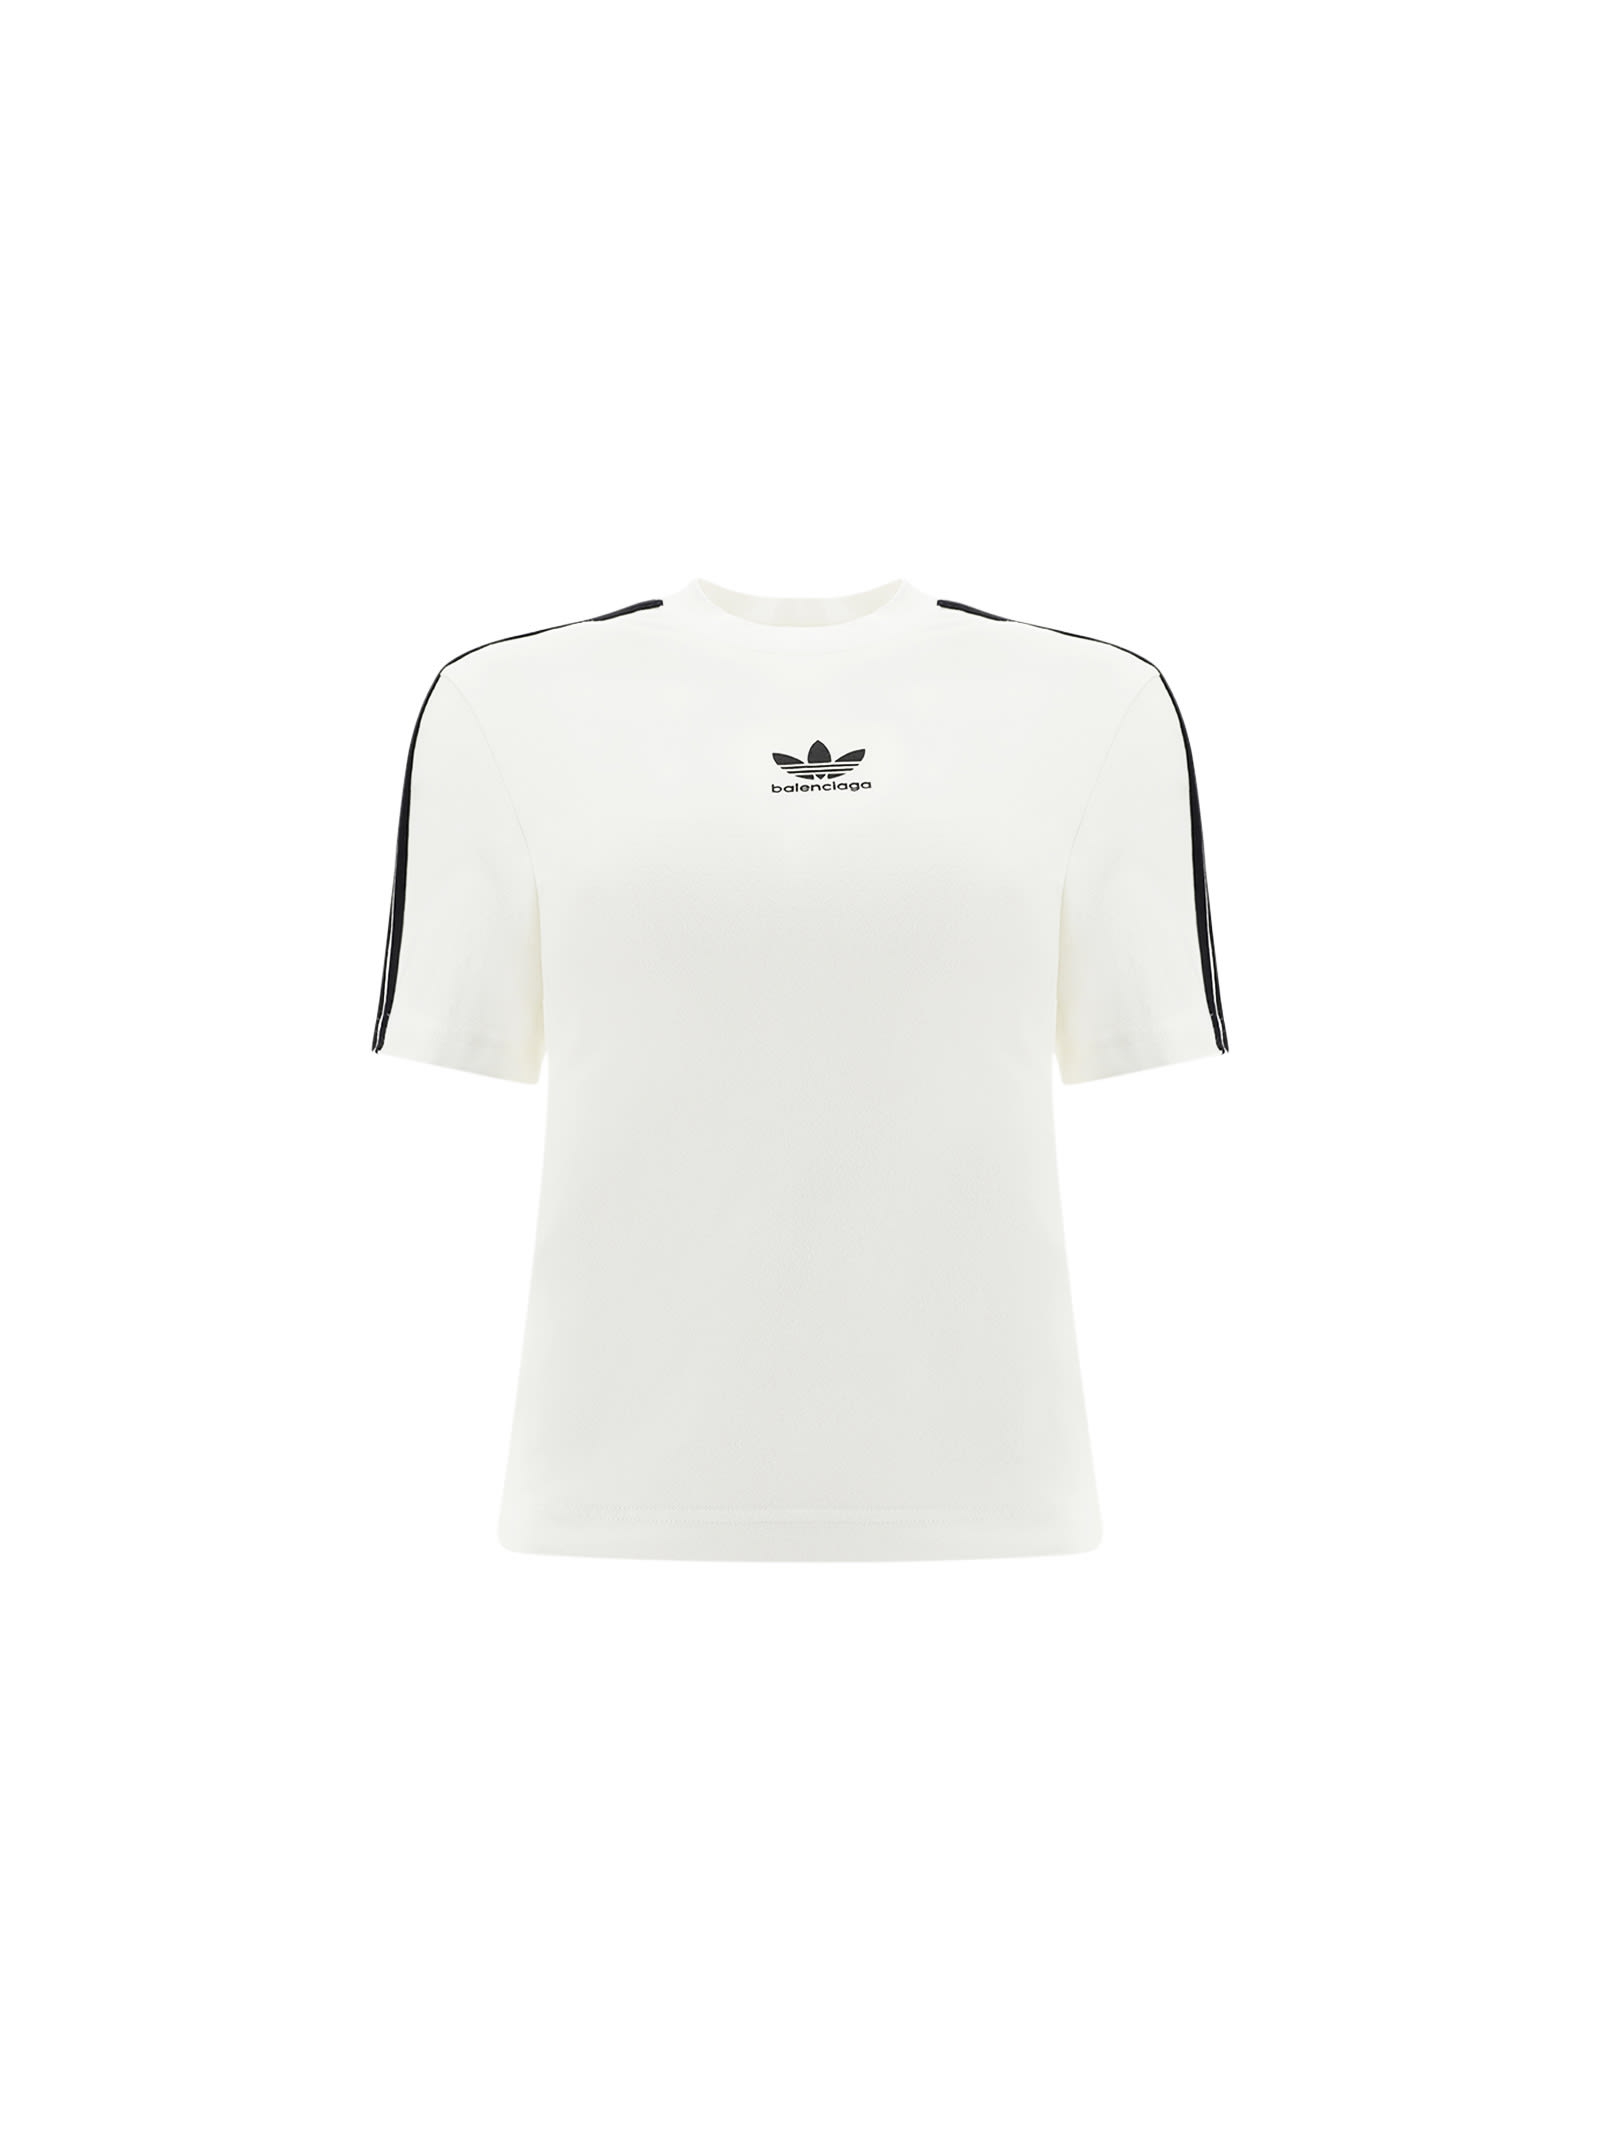 Balenciaga X Adidas T-shirt In White/black/black